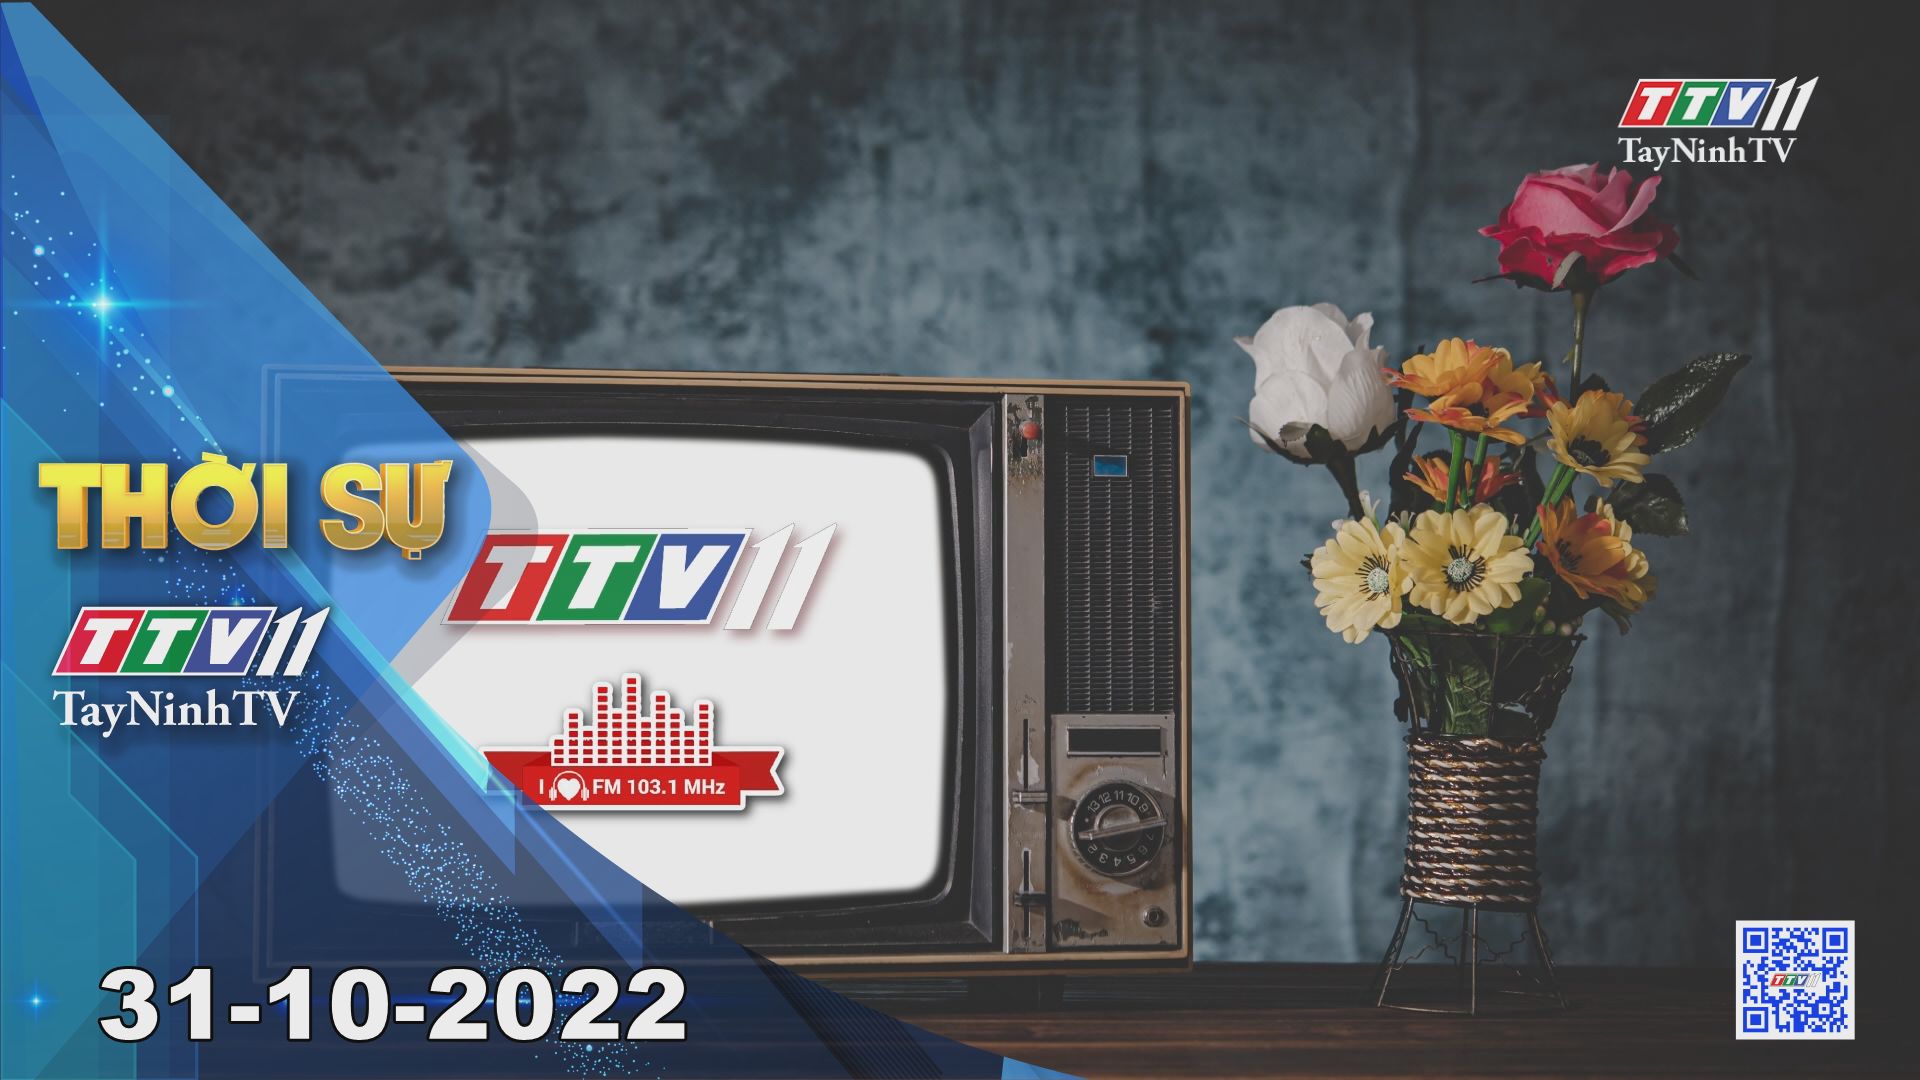 Thời sự Tây Ninh 31-10-2022 | Tin tức hôm nay | TayNinhTV